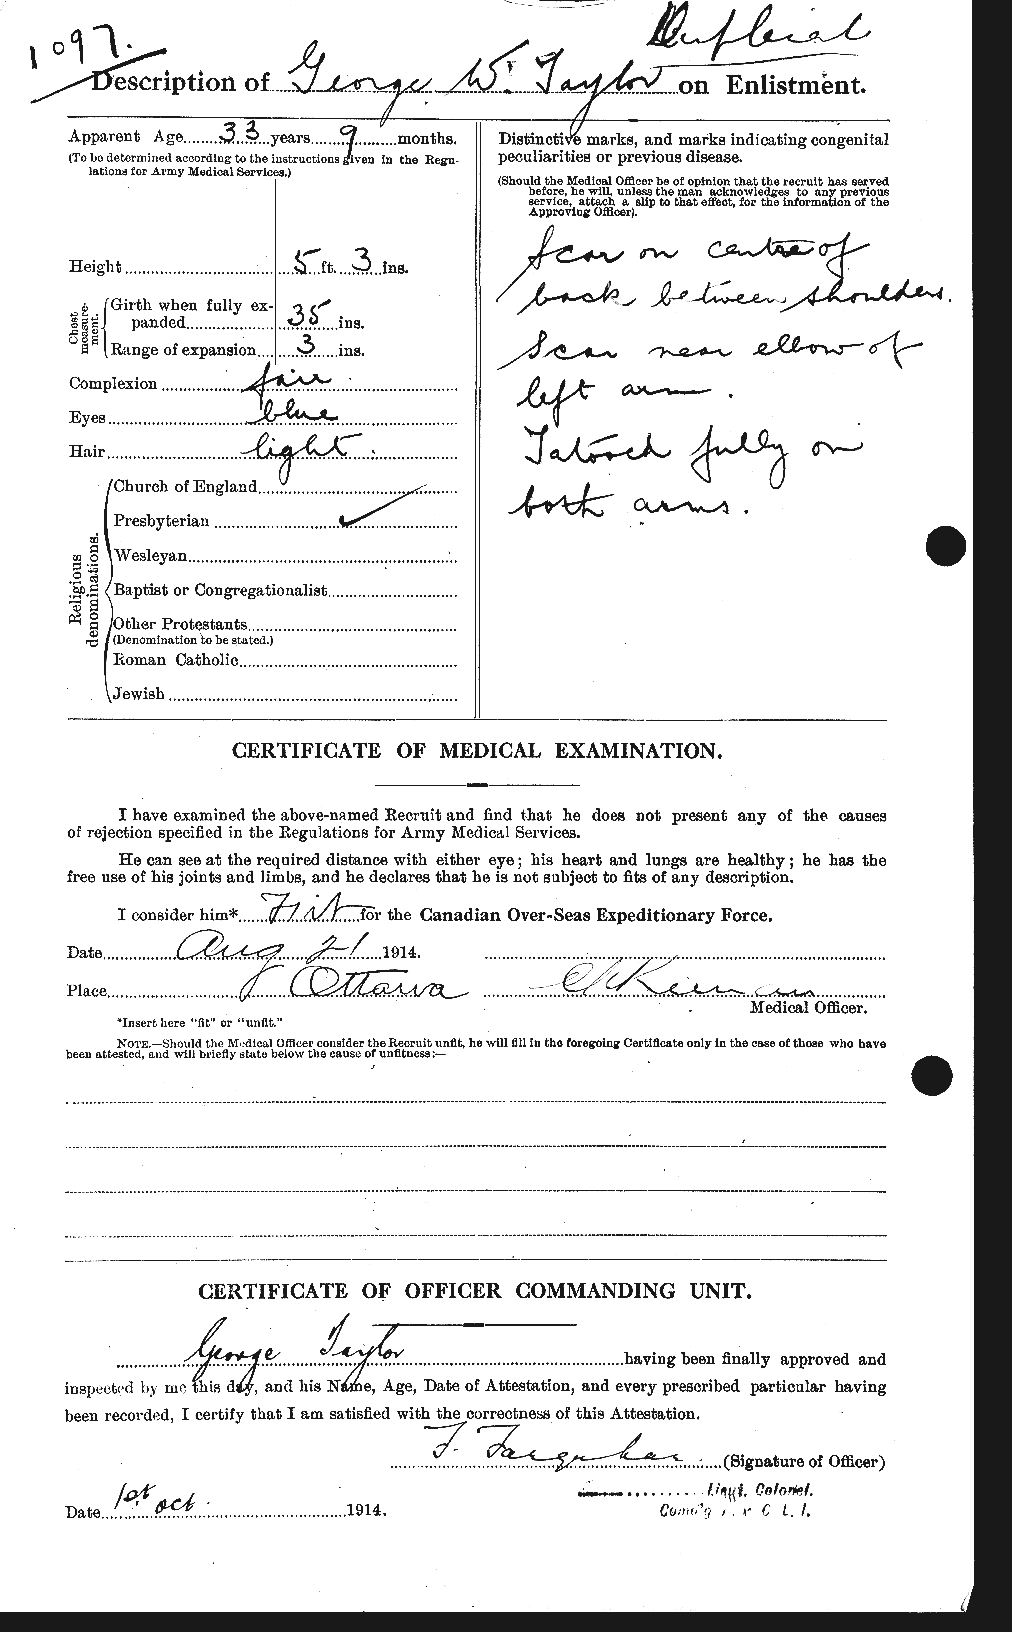 Dossiers du Personnel de la Première Guerre mondiale - CEC 626362b